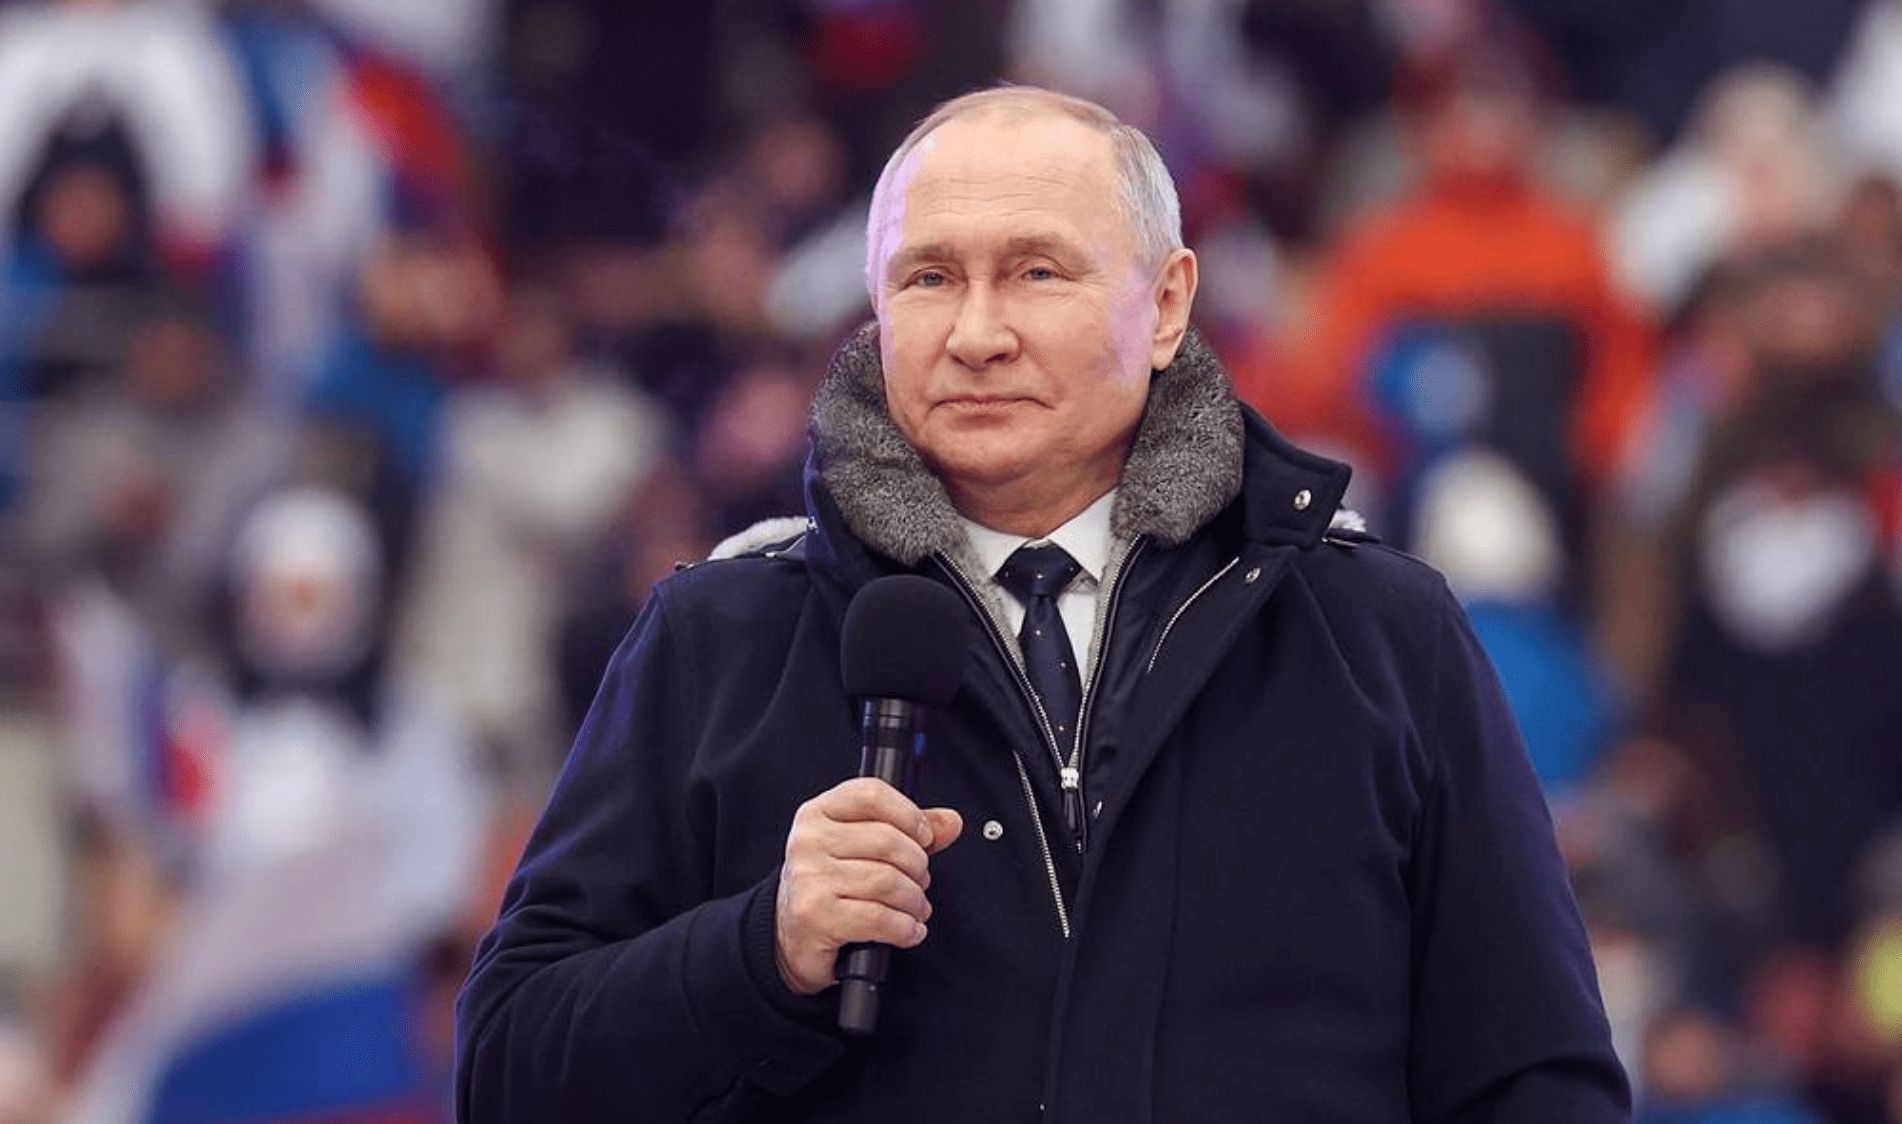 Putin vuole denunciare il trattato sulle forze armate convenzionali in Europa